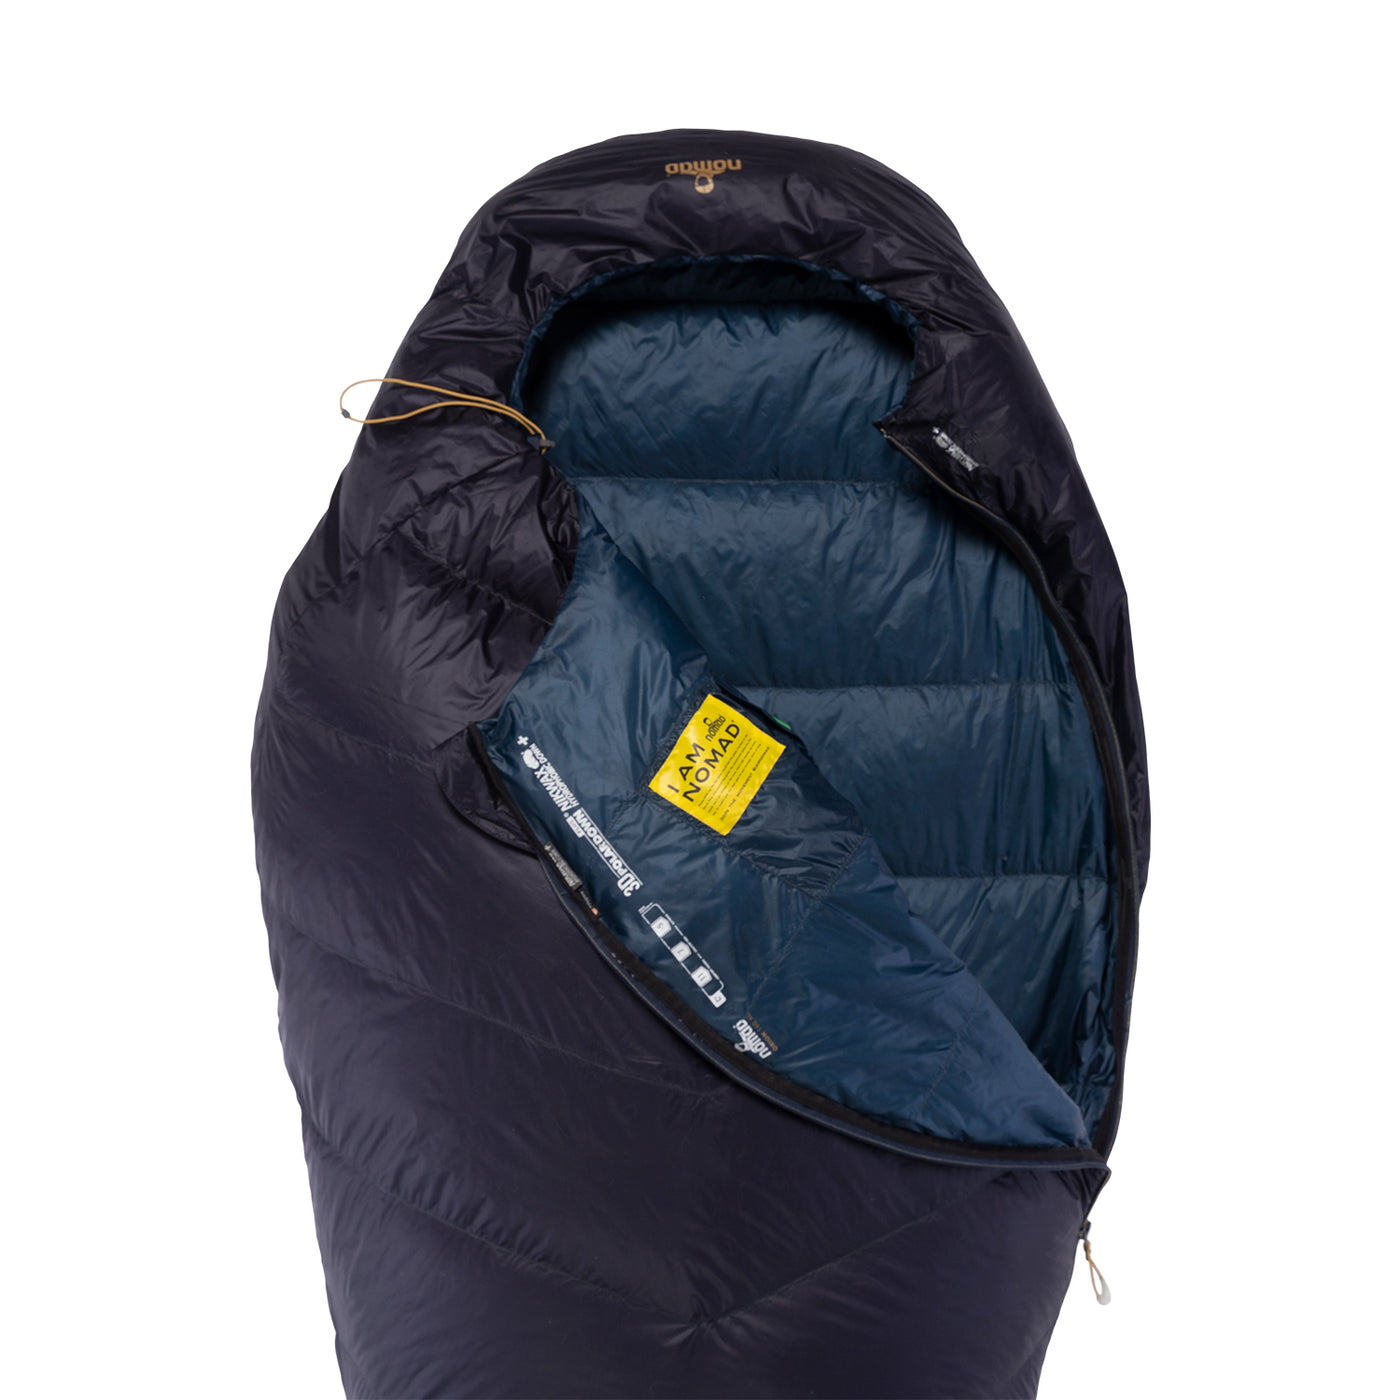 Orion 180 XL Mummy Sleeping Bag